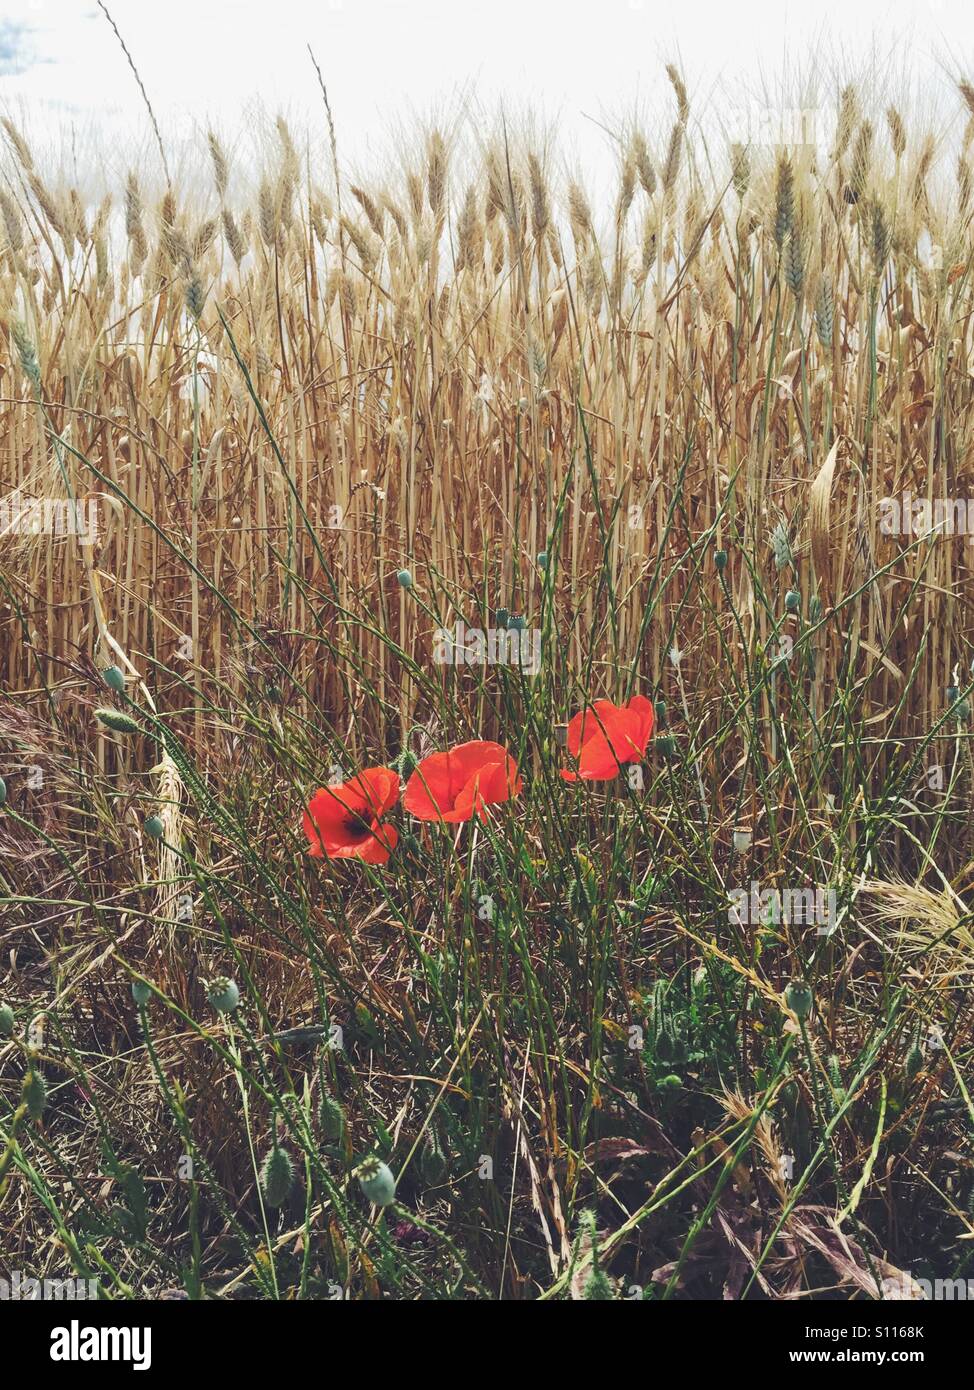 Des coquelicots sauvages dans un champ de blé, près d'Uzès dans le Gard, région du Languedoc Roussillon, France Banque D'Images